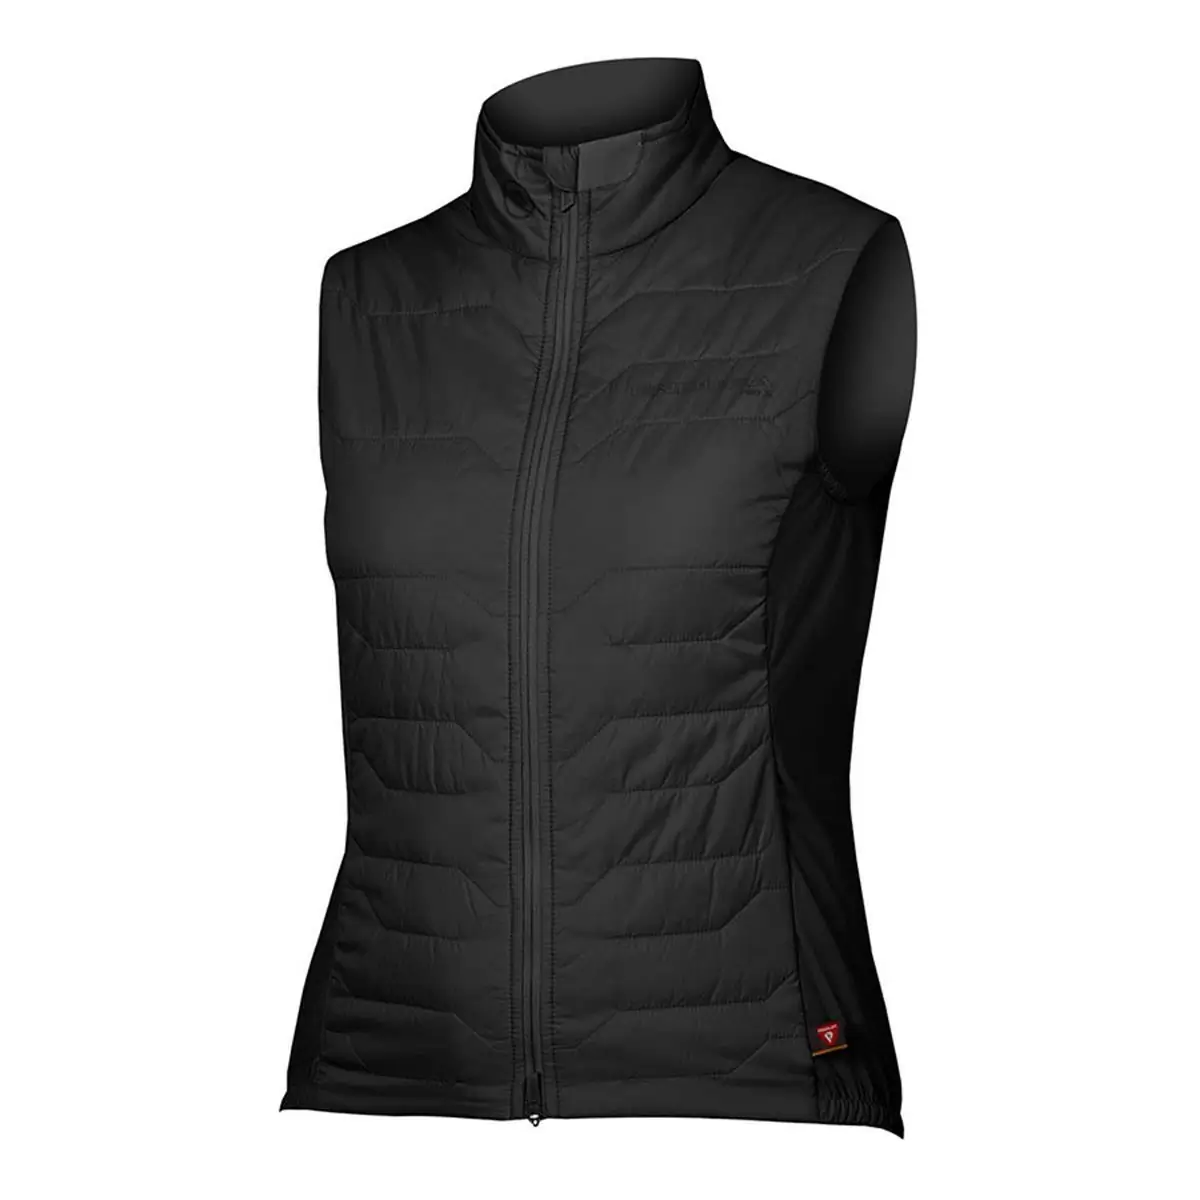 Pro SL PrimaLoft Rain/Windproof Vest Women's Vest Black size XL - image